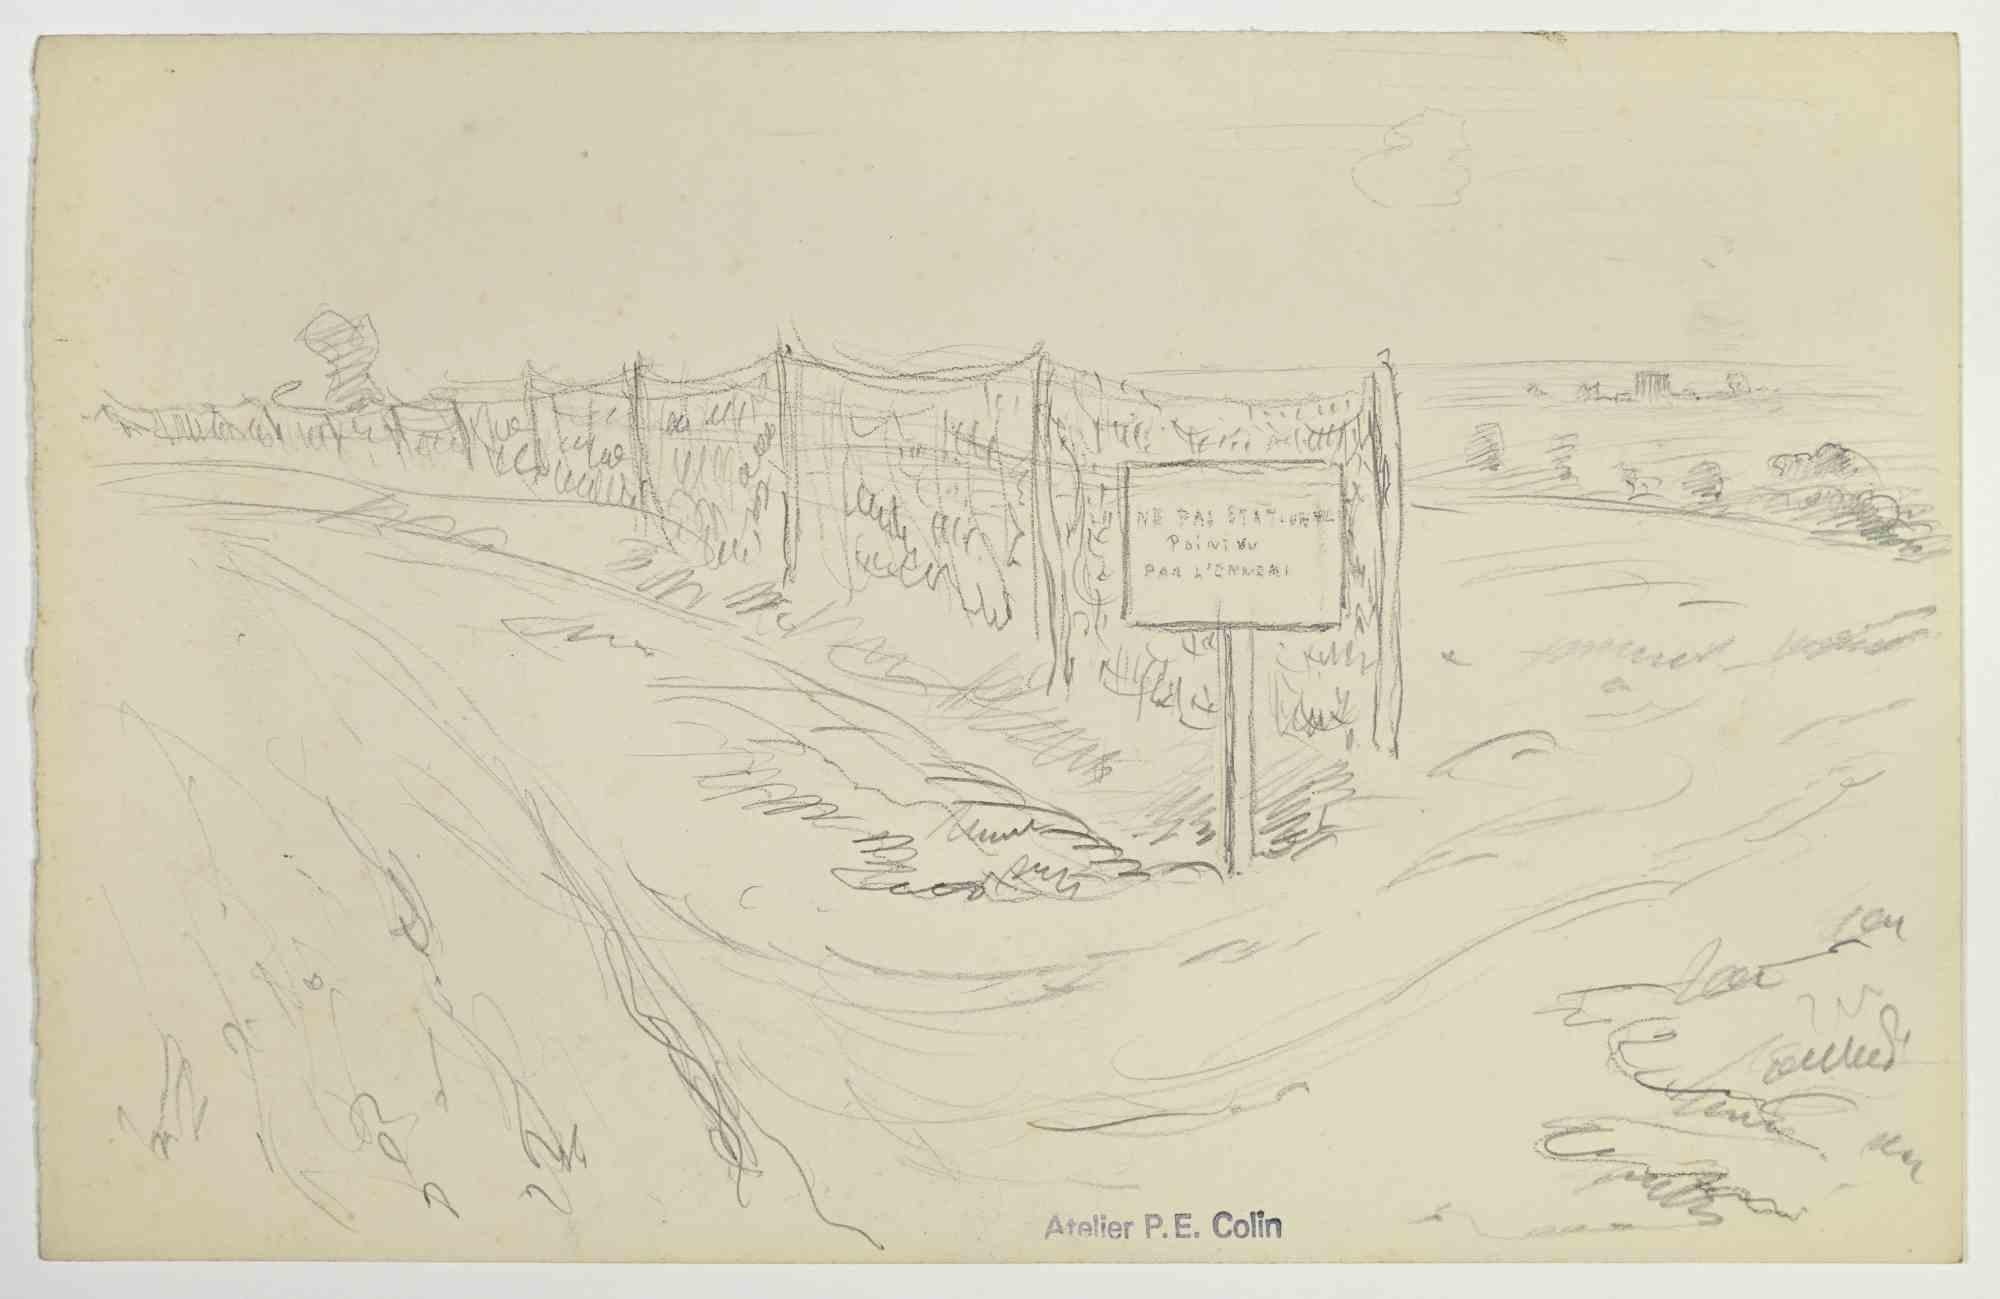 War Zone ist eine Zeichnung von Paul Emile Colin aus dem frühen 20. Jahrhundert.

Kohlestift auf elfenbeinfarbenem Papier

Auf der Unterseite gestempelt.

Guter Zustand mit leichten Stockflecken.

Das Kunstwerk wird durch geschickte ausdrucksstarke